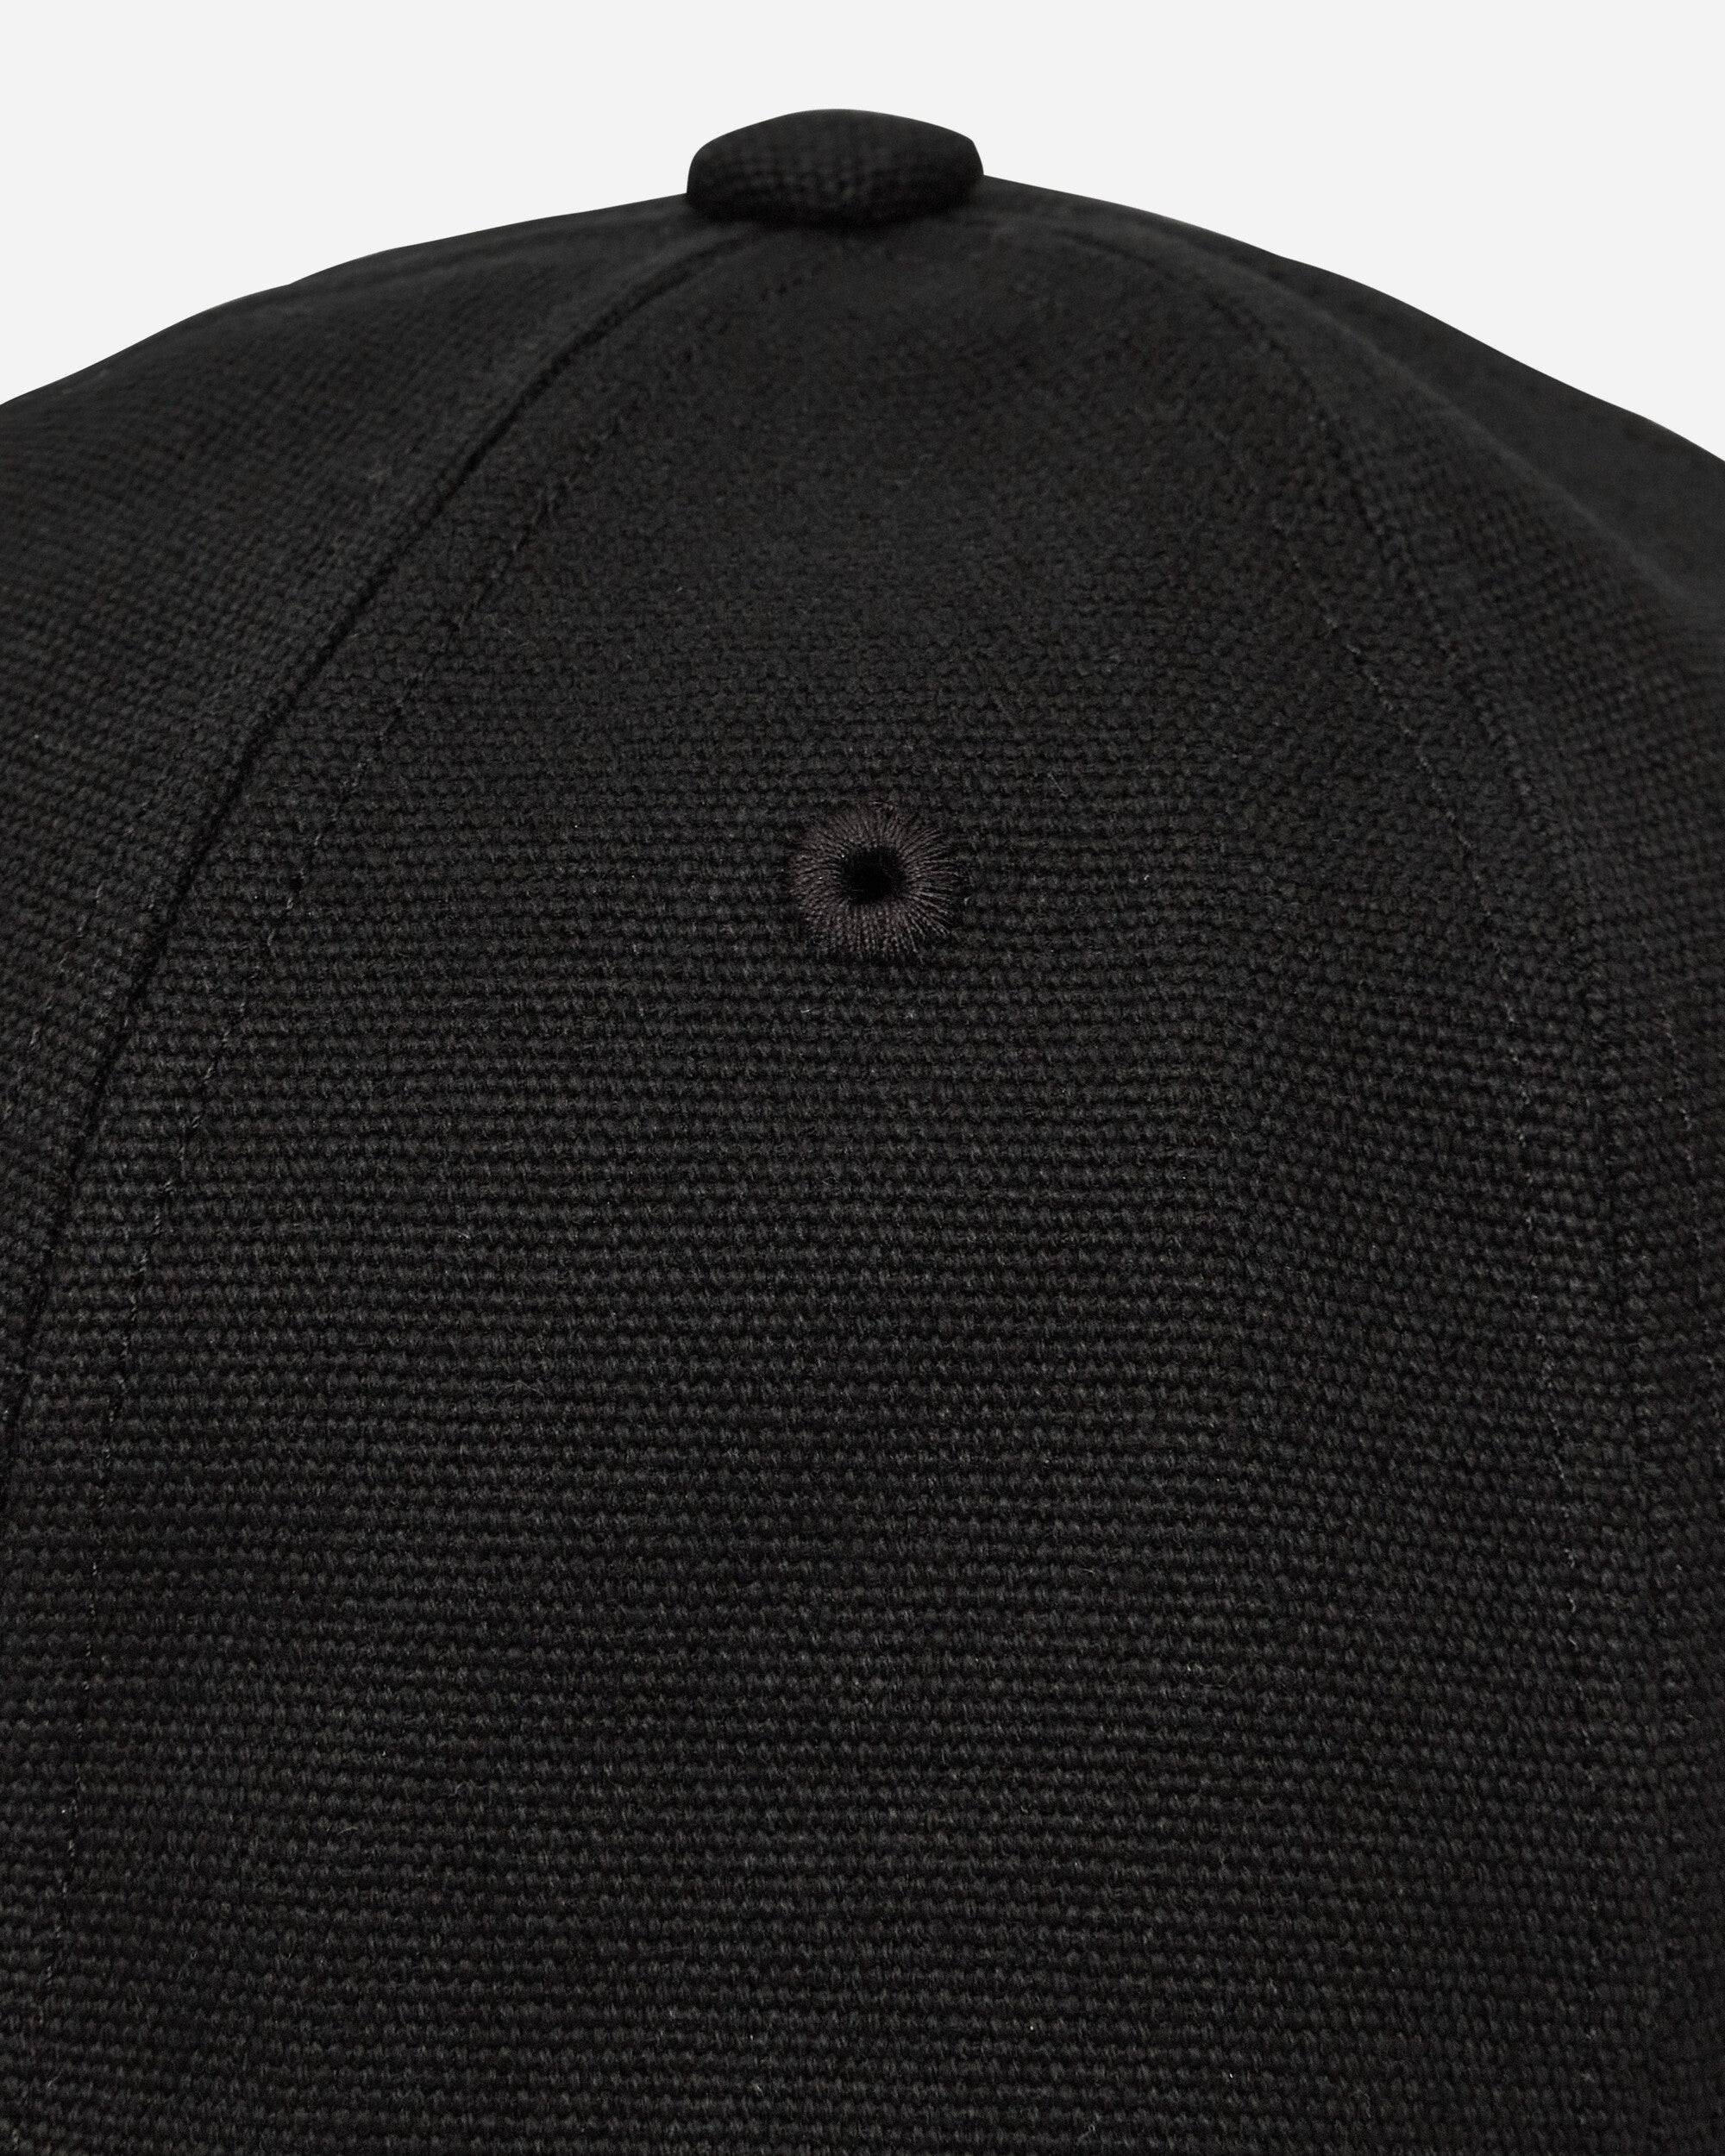 A.P.C. Casquette Jjjjound Black Hats Caps COHDN-M24145 LZZ